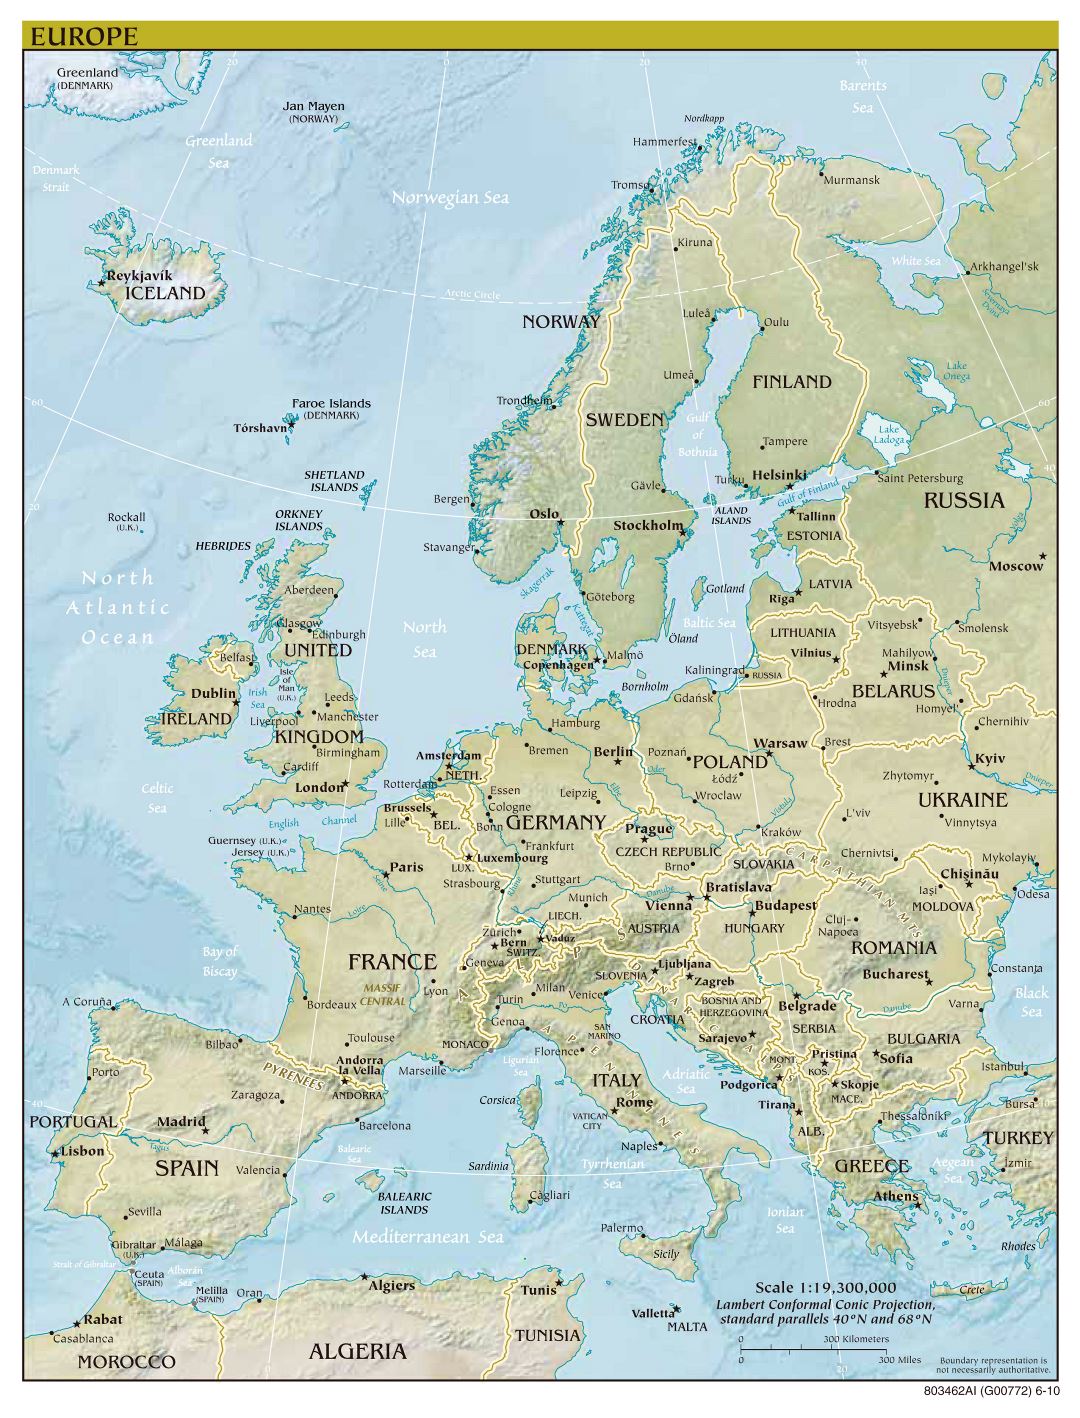 Политическая карта Европы в большом формате с отображением рельефа, крупных городов и столиц - 2010